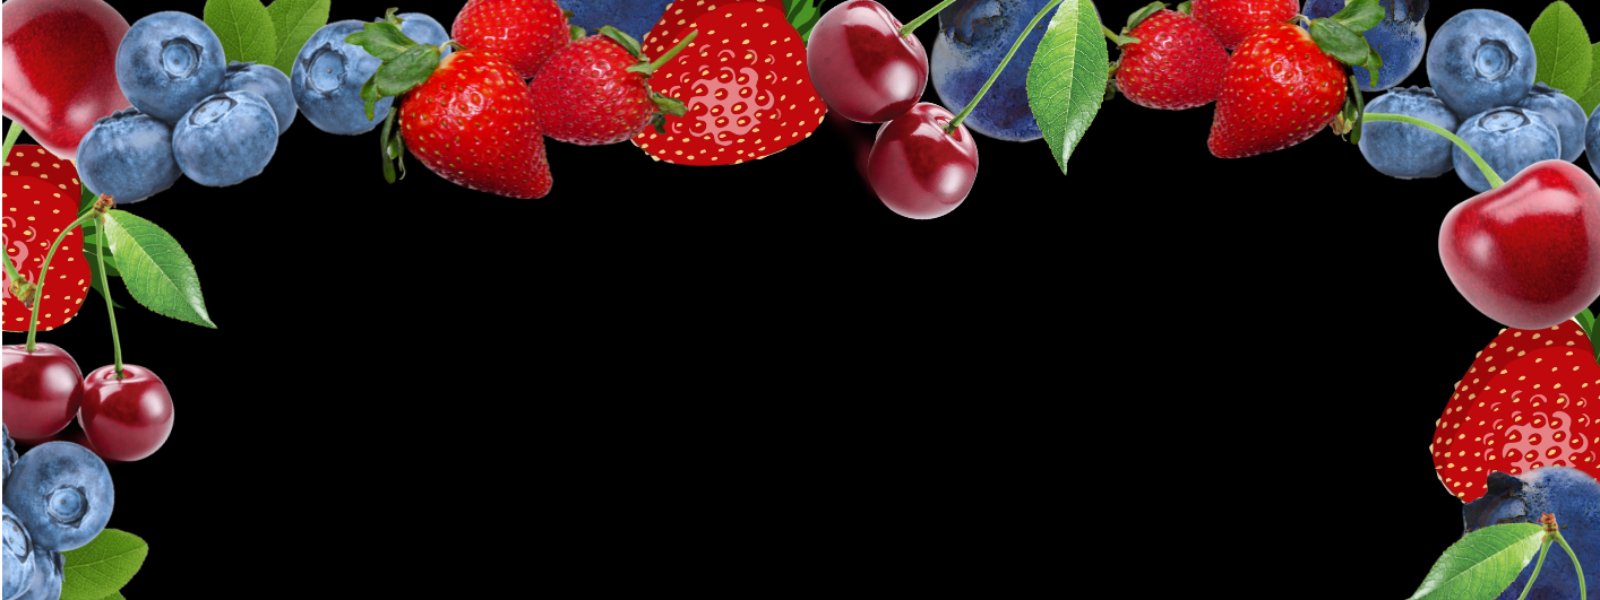 BERRYMARKET OÜ - BerryMarket OÜ on spetsialiseerunud maasikate-, vaarikate- ja muude marjade ning aiasaaduste müügile....